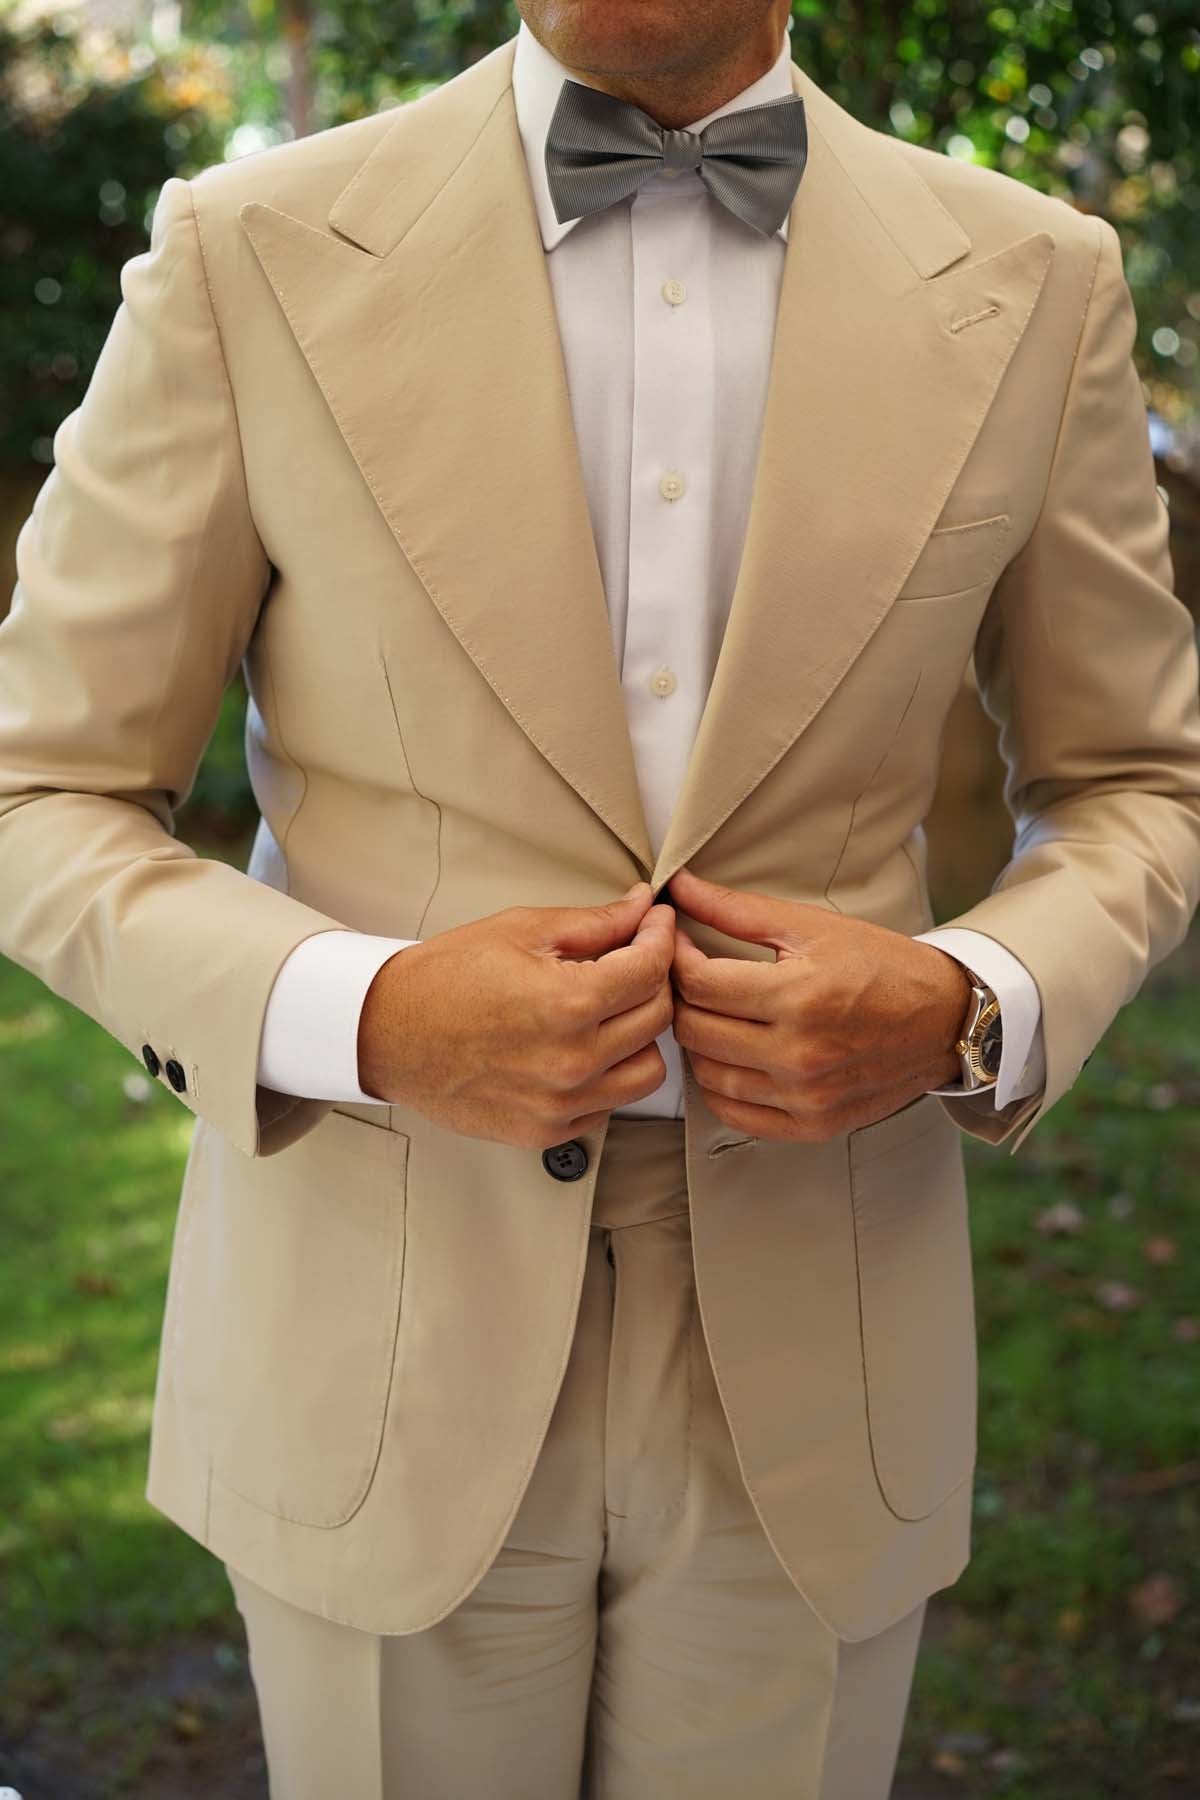 Silver Bow Tie | Light Grey Bow Ties | Men's Luxury Pre-Tied Bowtie AU ...